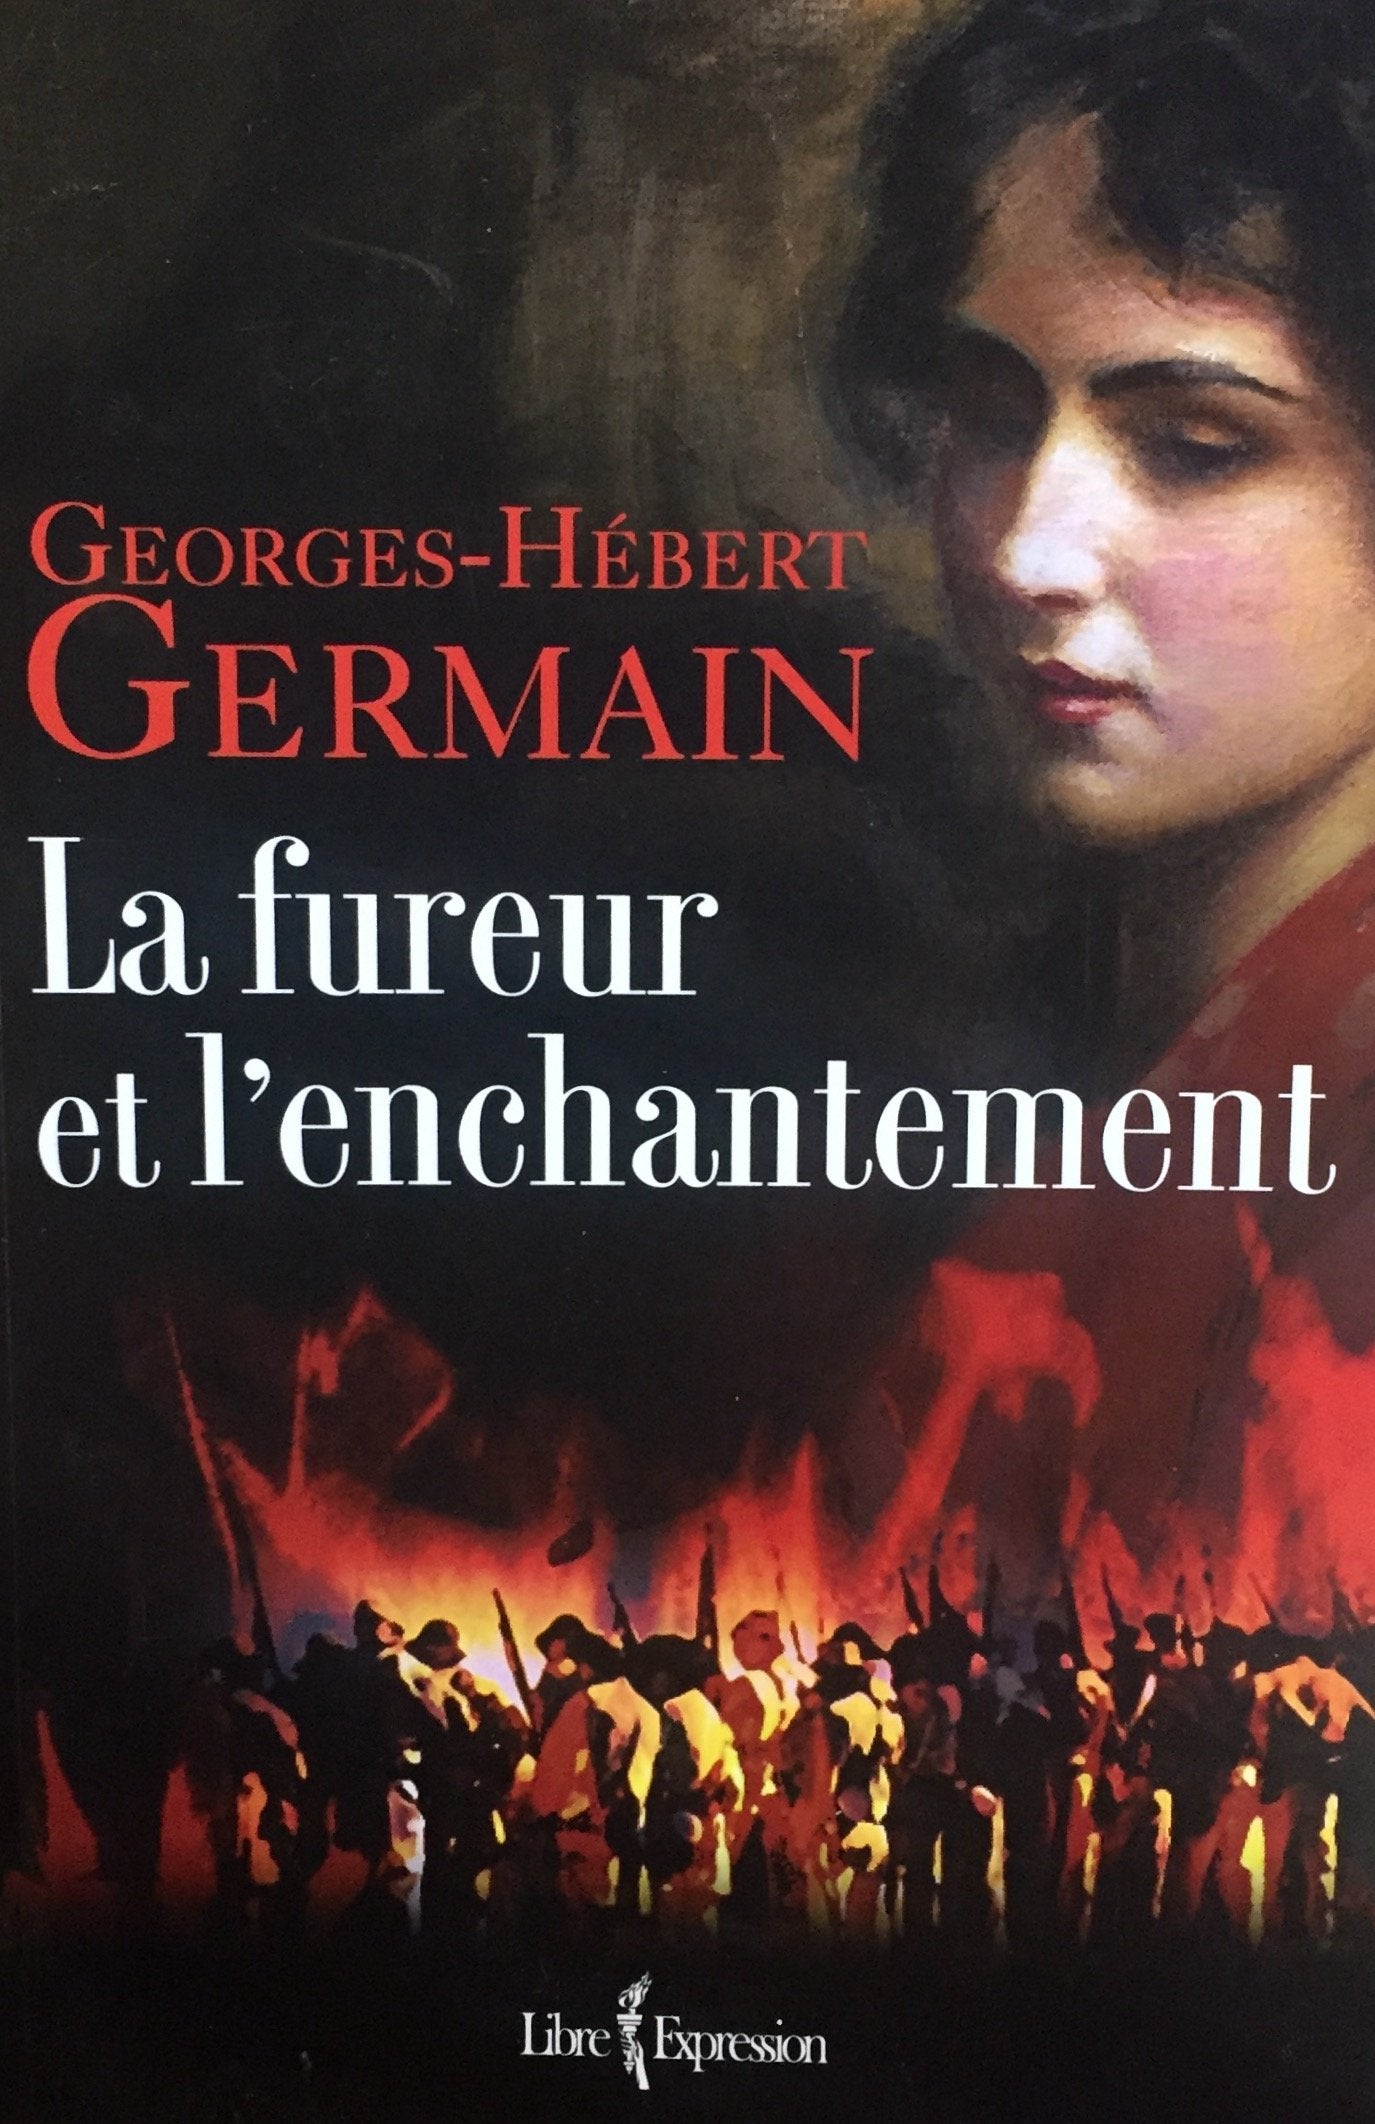 Livre ISBN 2764804261 La fureur et l'enchantement (Georges-Hébert Germain)